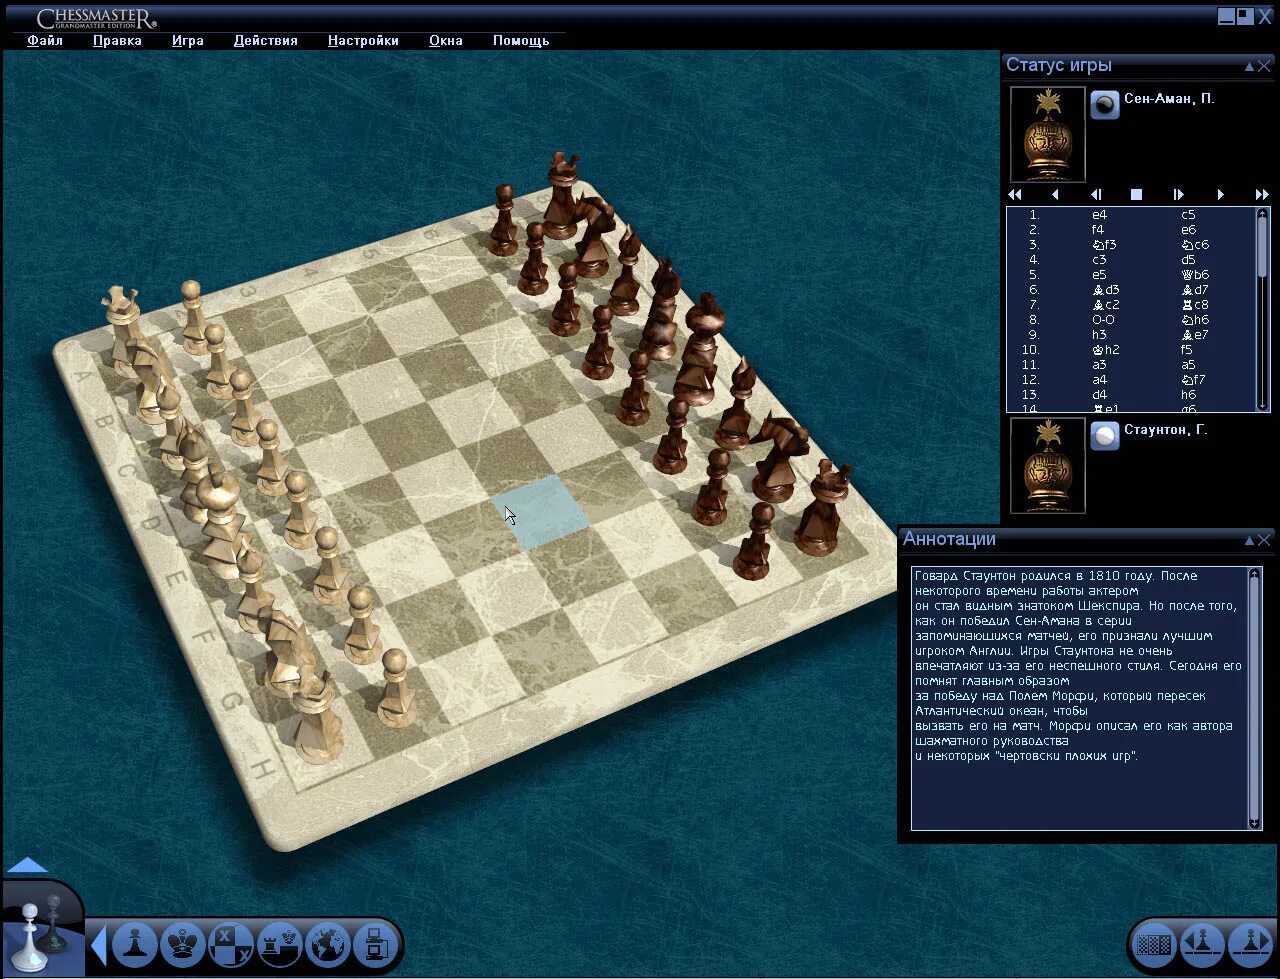 Шахматы с компьютером 10 уровень. Чессмастер шахматы. CHESSMASTER 2008. CHESSMASTER (2003). CHESSMASTER игра на ПК.